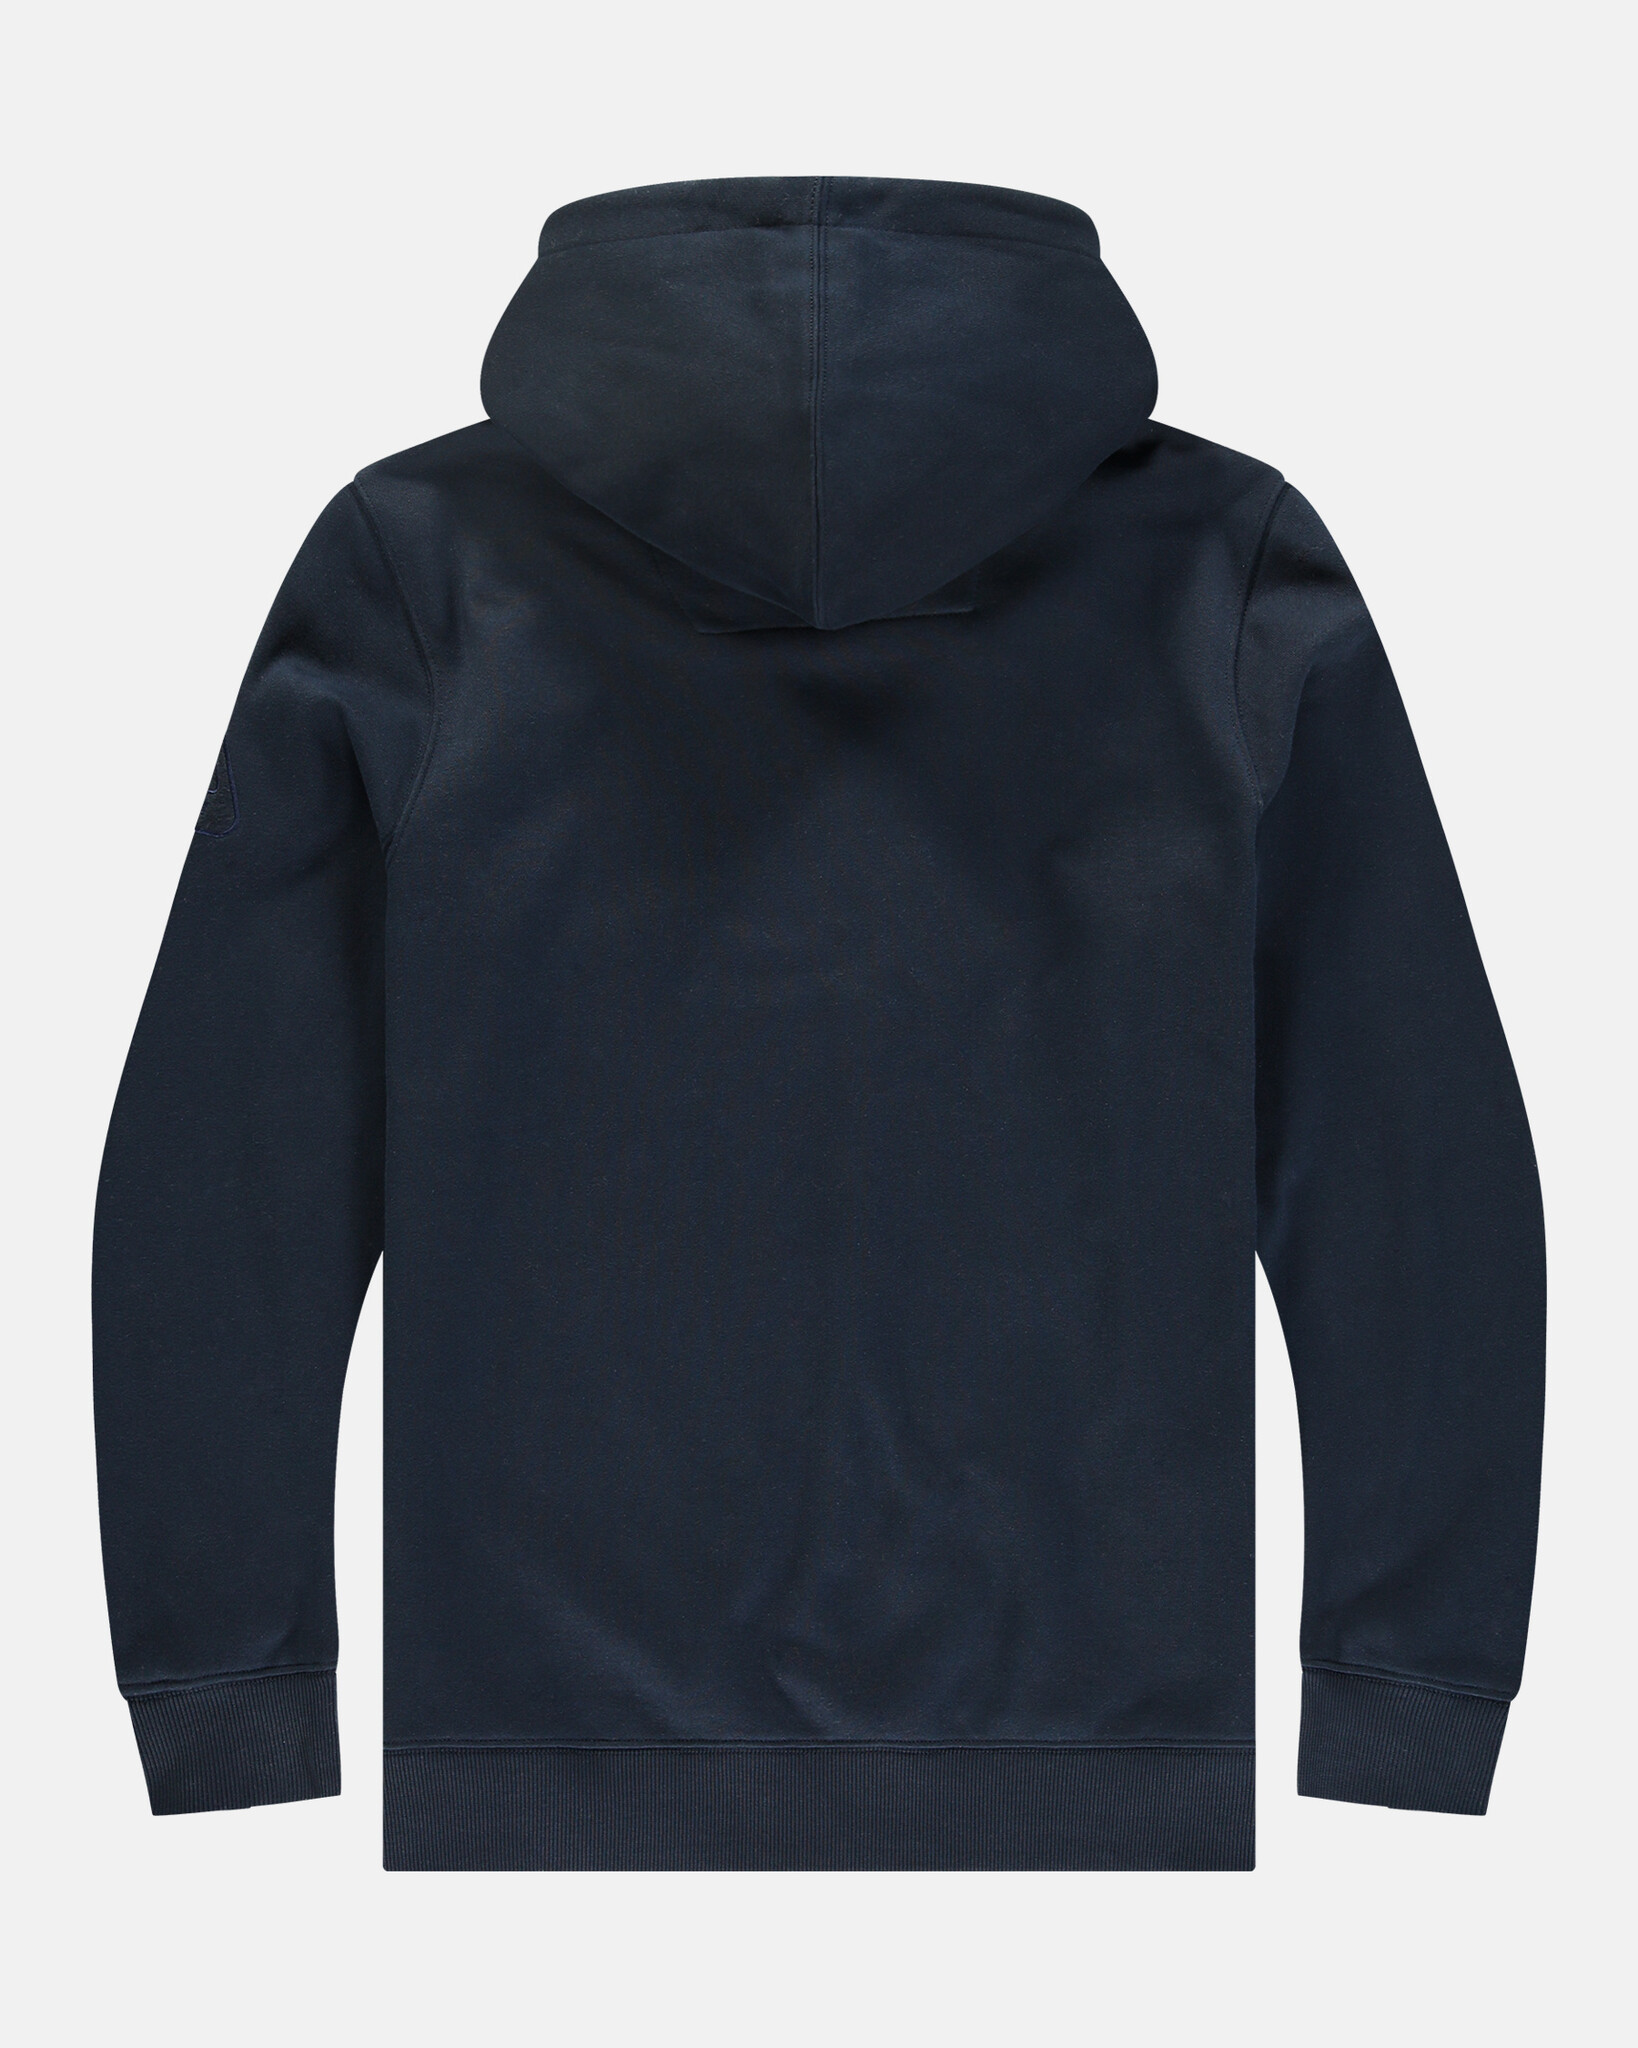 De zachte katoenen Antartic hoodie